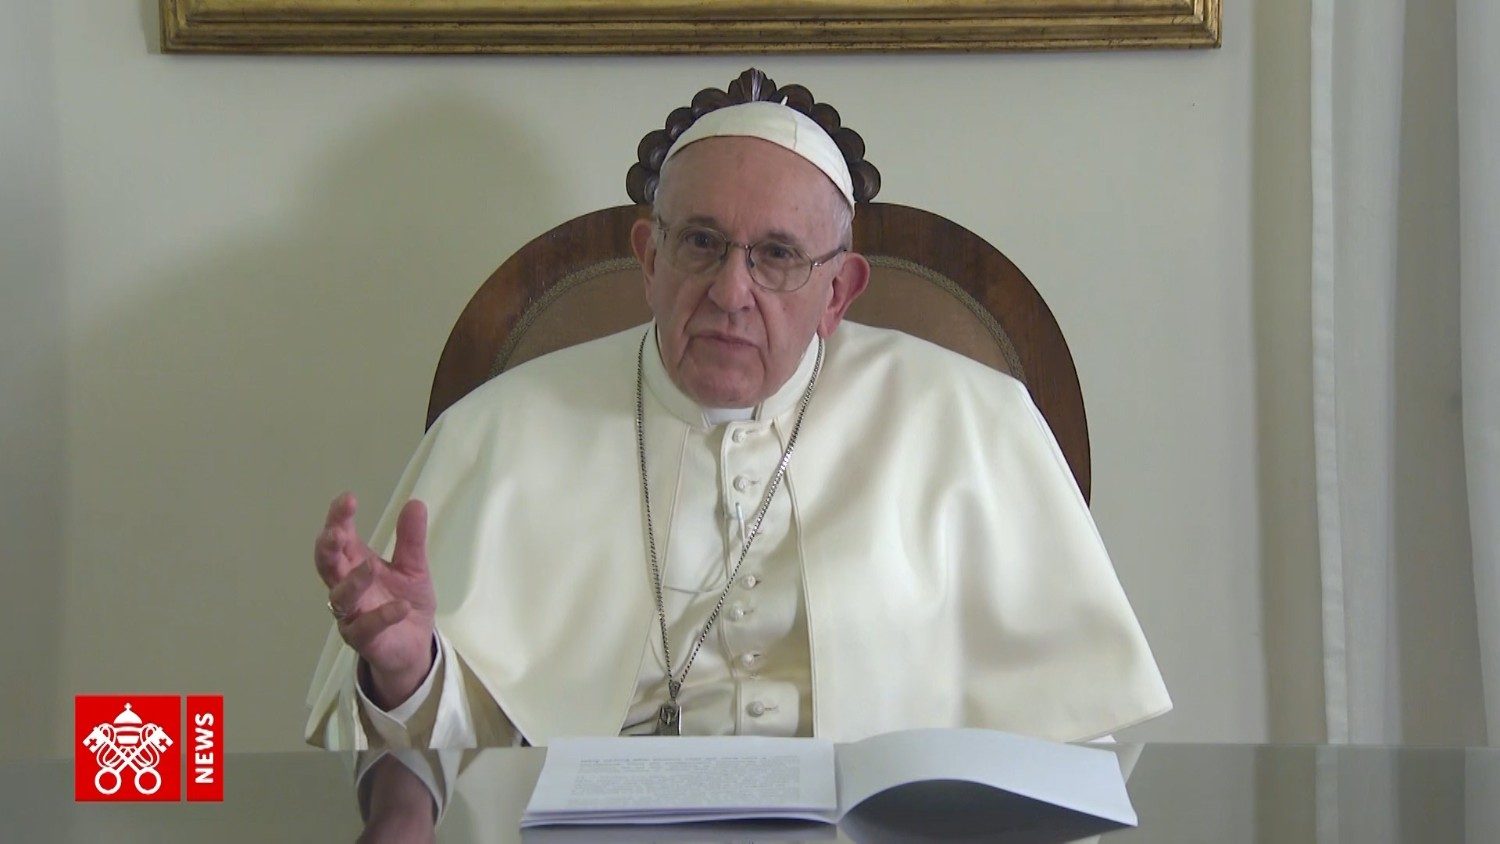 Обнародованы молитвенные намерения Папы на ноябрь: о диалоге и примирении на Ближнем Востоке